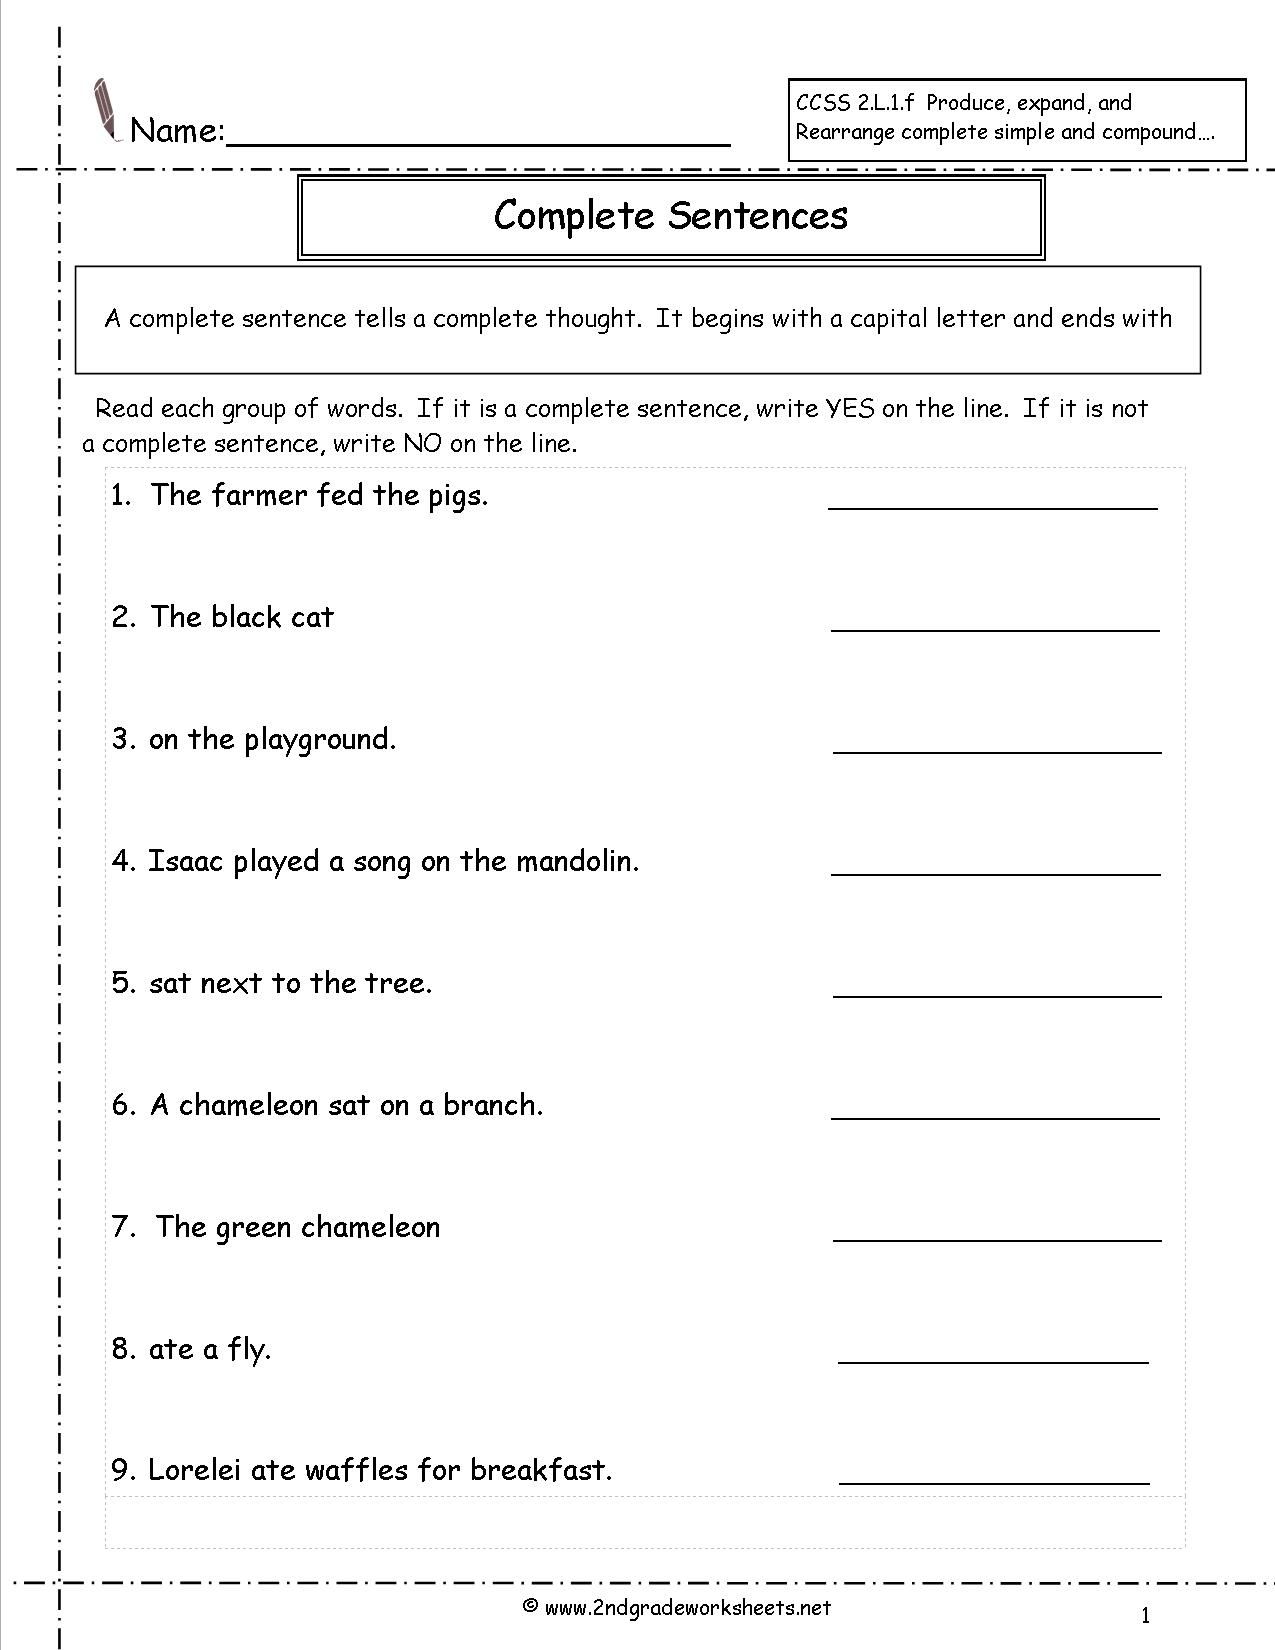 compound-and-complex-sentences-worksheets-for-grade-5-foto-kolekcija